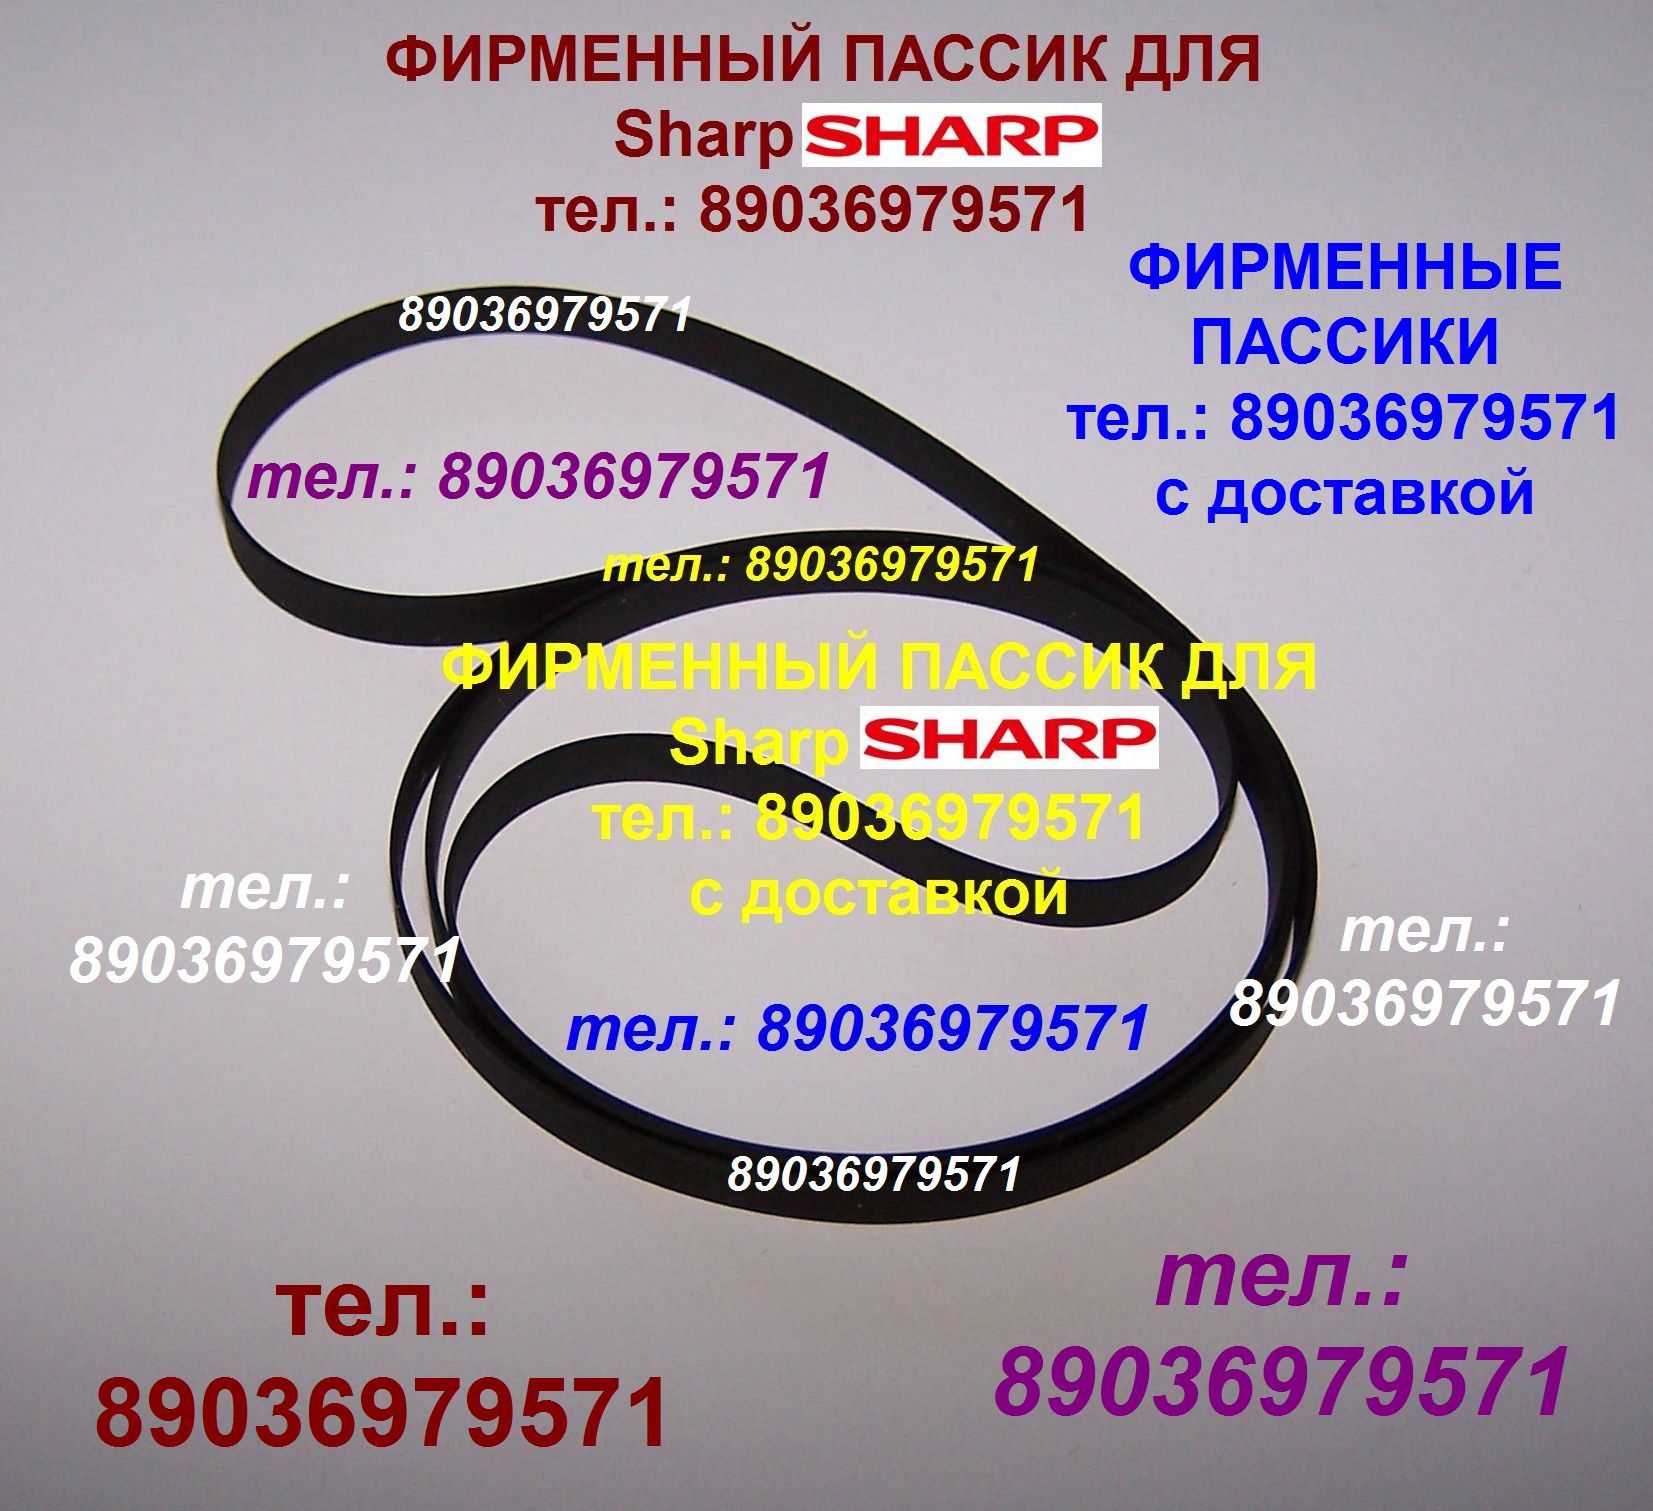 Японский пассик для Sharp RP-117 пасик Sharp RP117 ремень Sharp RP 117 Шарп пассик для проигрывателя  в городе Москва, фото 1, телефон продавца: +7 (903) 697-95-71